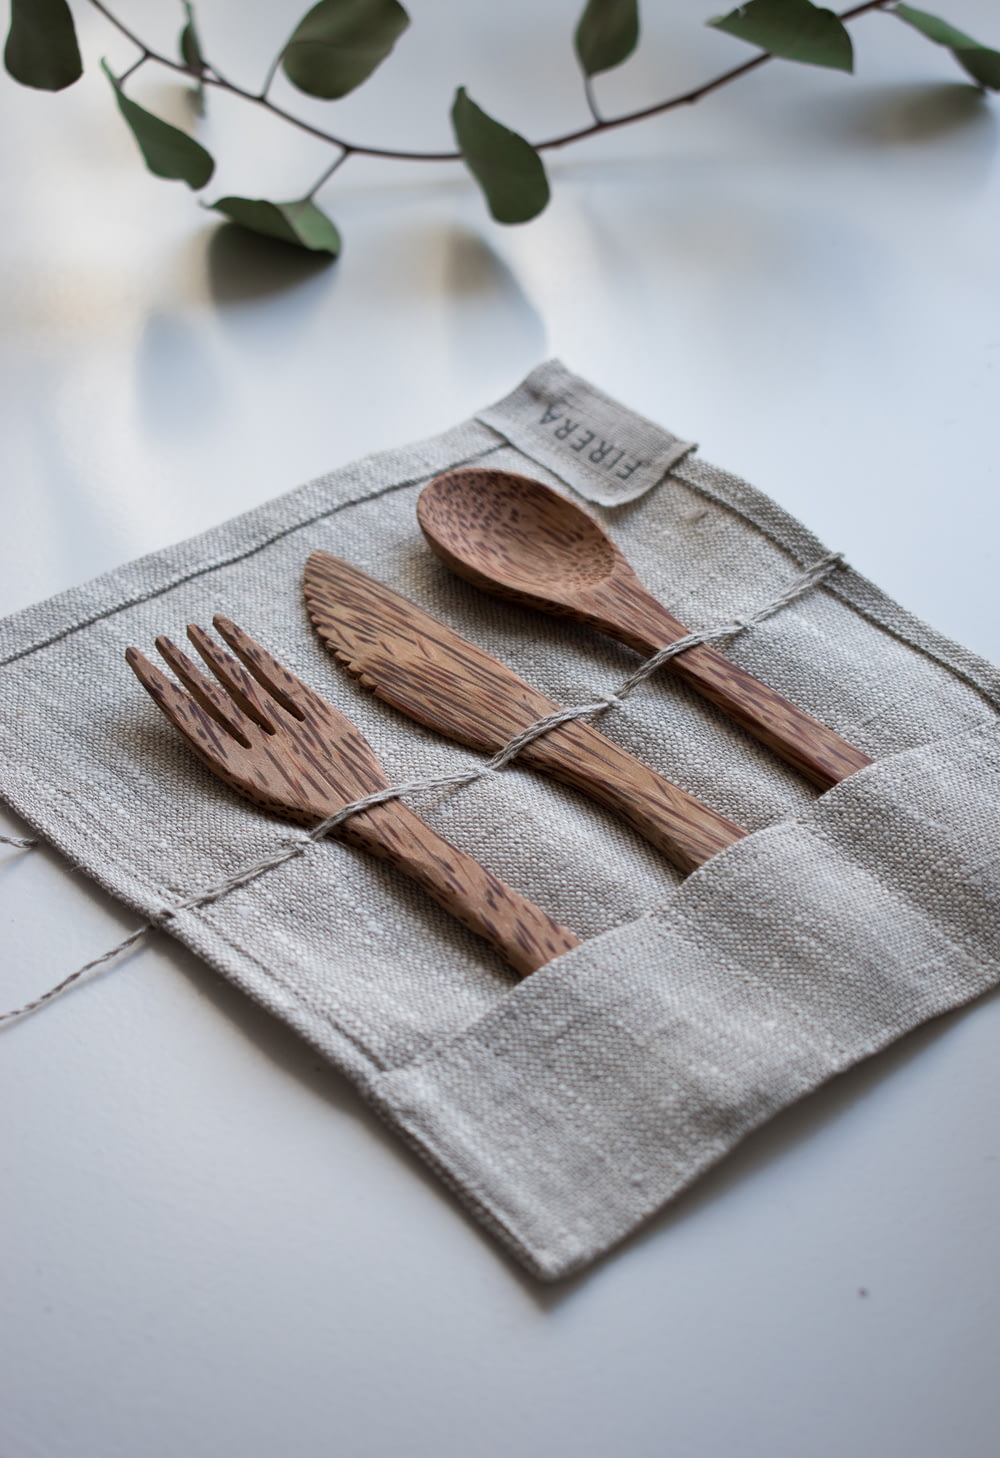 Fourchette, cuillère et couteau en bois brun sur textile